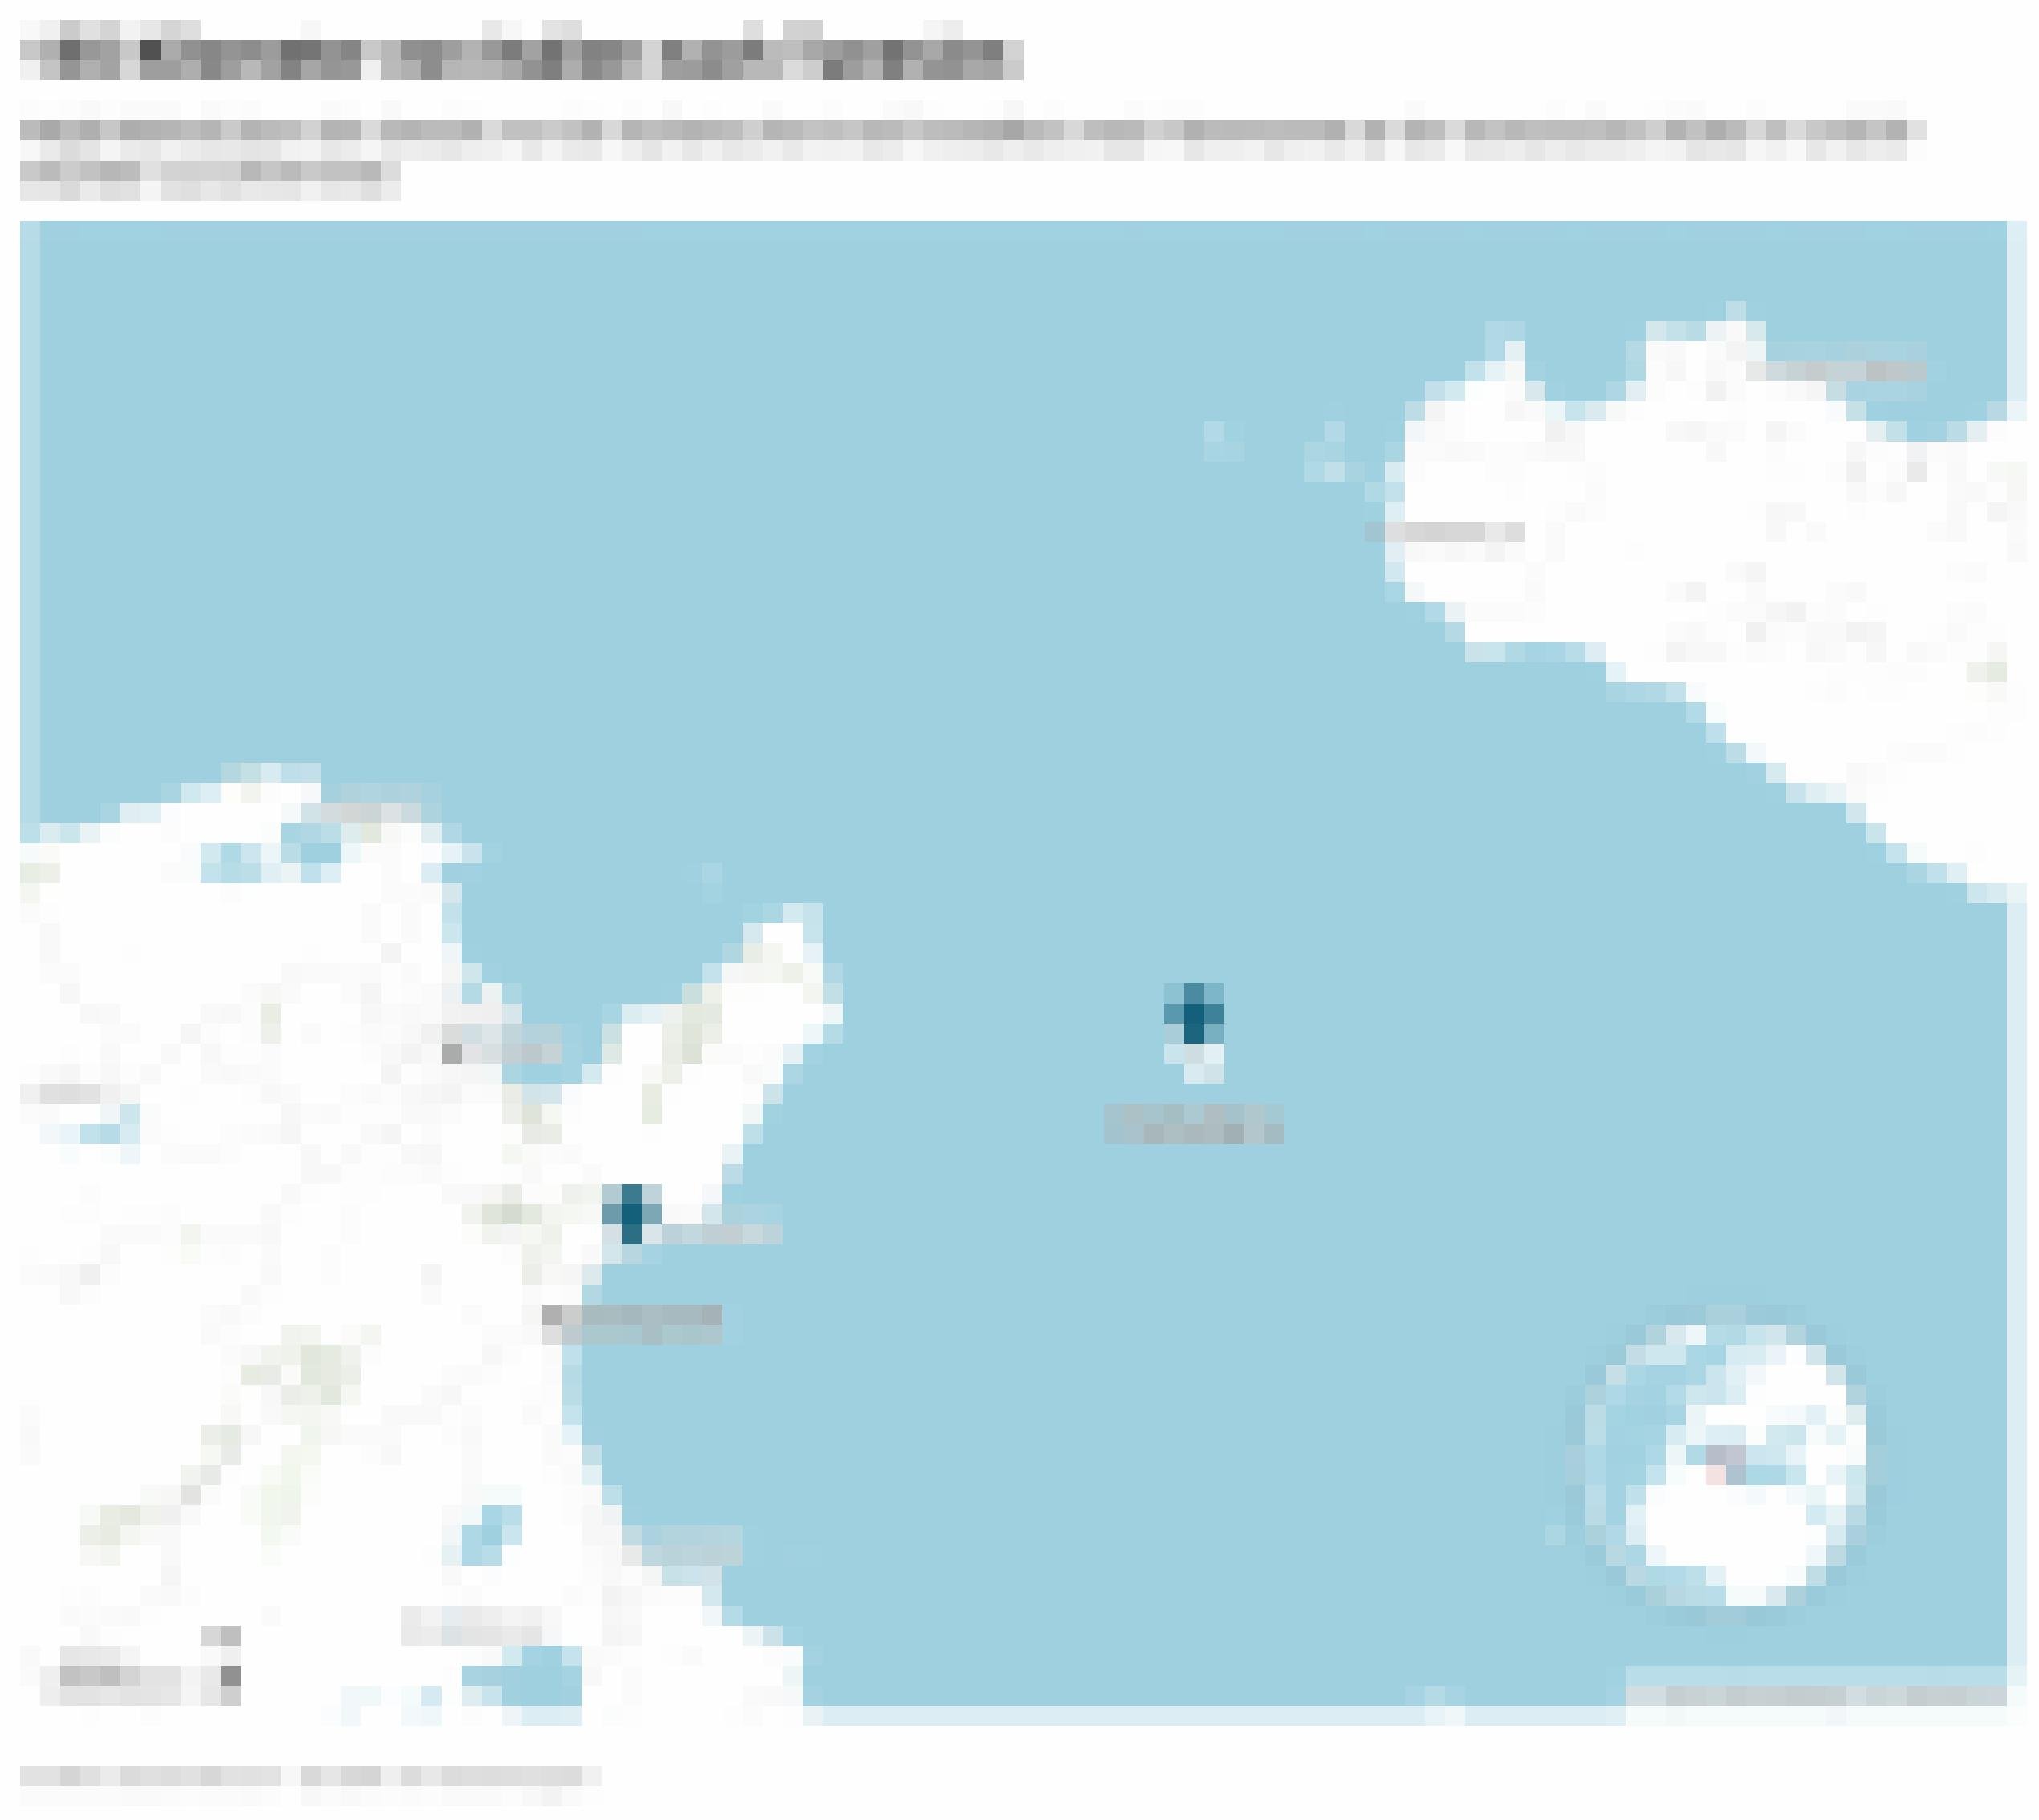 Karte mit der italienischen Insel Pantelleria und der Stadt Hammamet an der tunesischen Ostküste